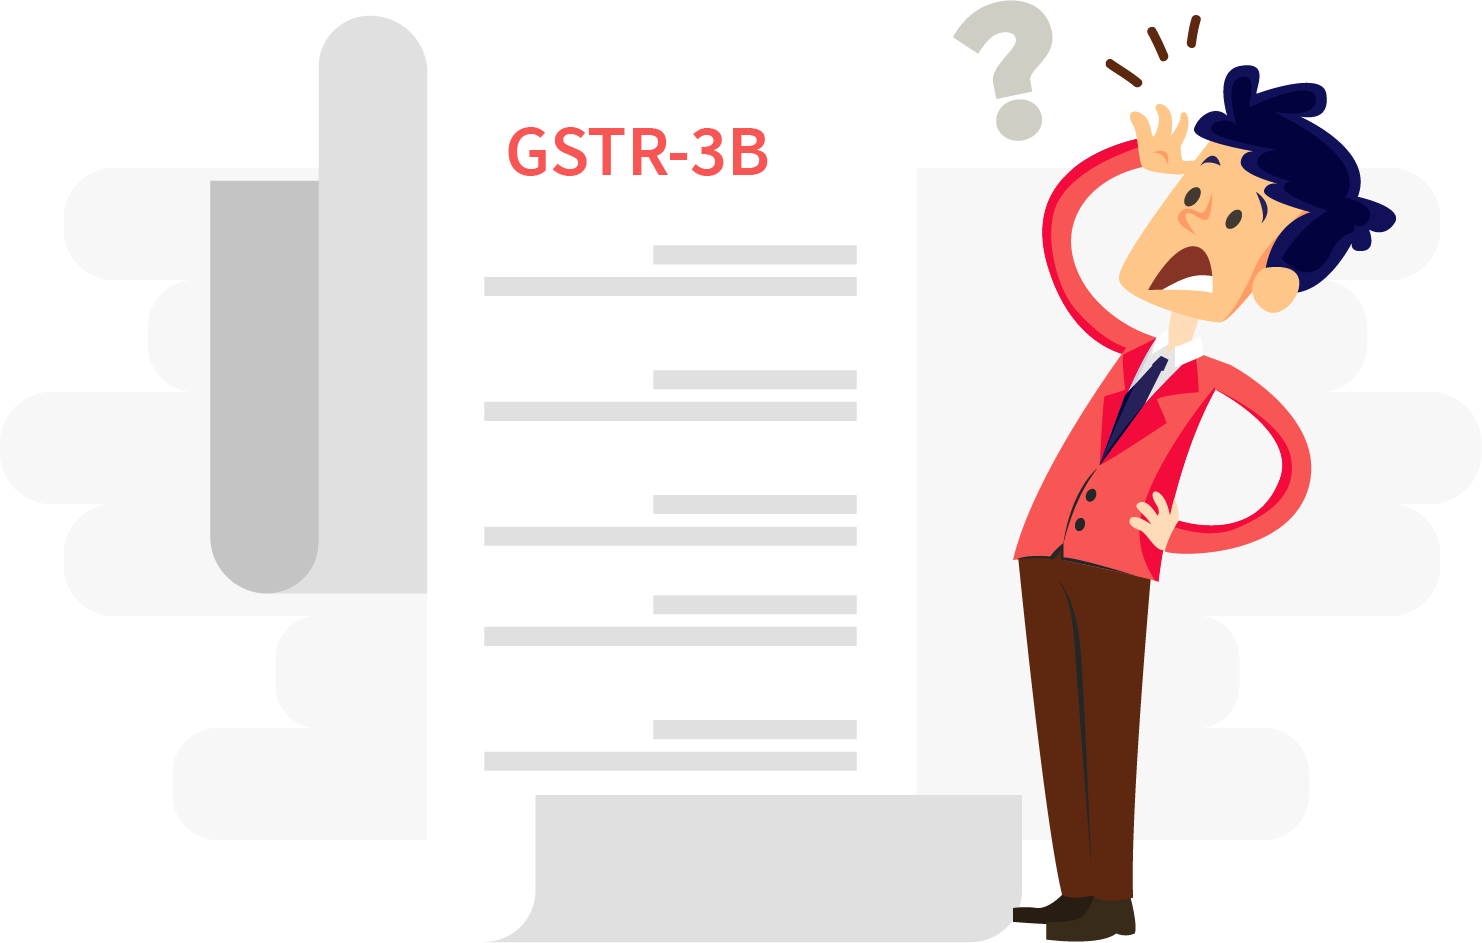 GST Council allows amendments in GSTR-3B: Sources